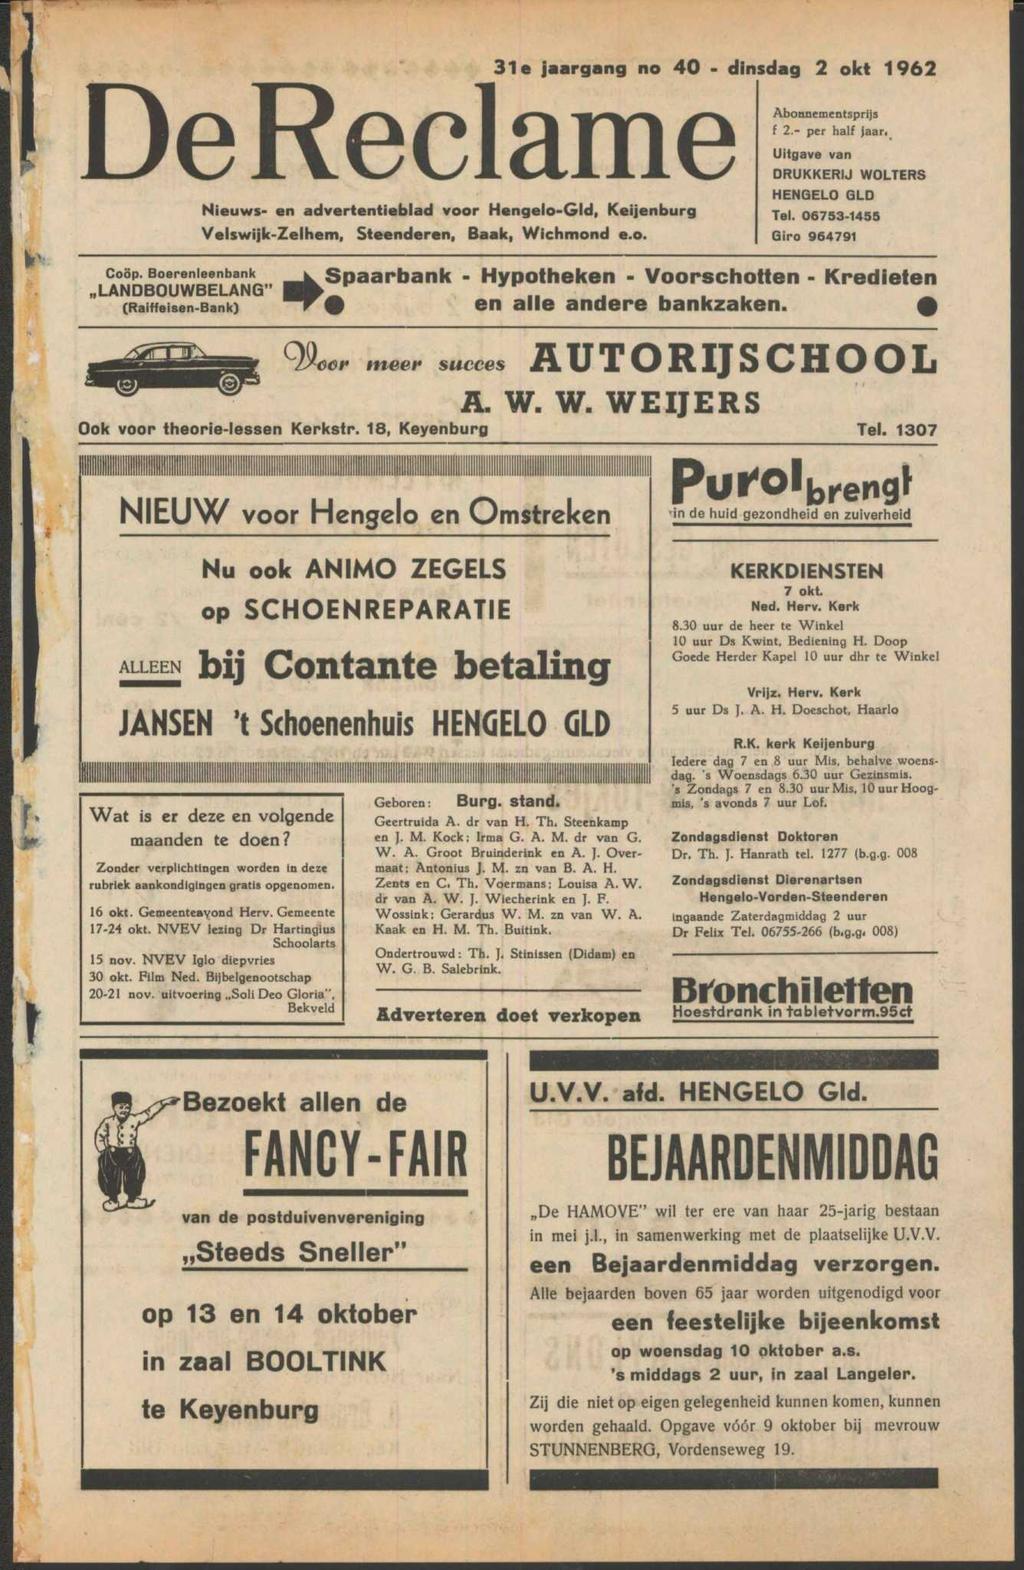 De Reclame Nieuws- en advertentieblad voor Hengelo-Gld, Keijenburg Velswijk-Zelhem, Steenderen, Baak, Wichmond e.o. 31e jaargang no 40 - dinsdag 2 okt 1962 Abonnementsprijs f 2.